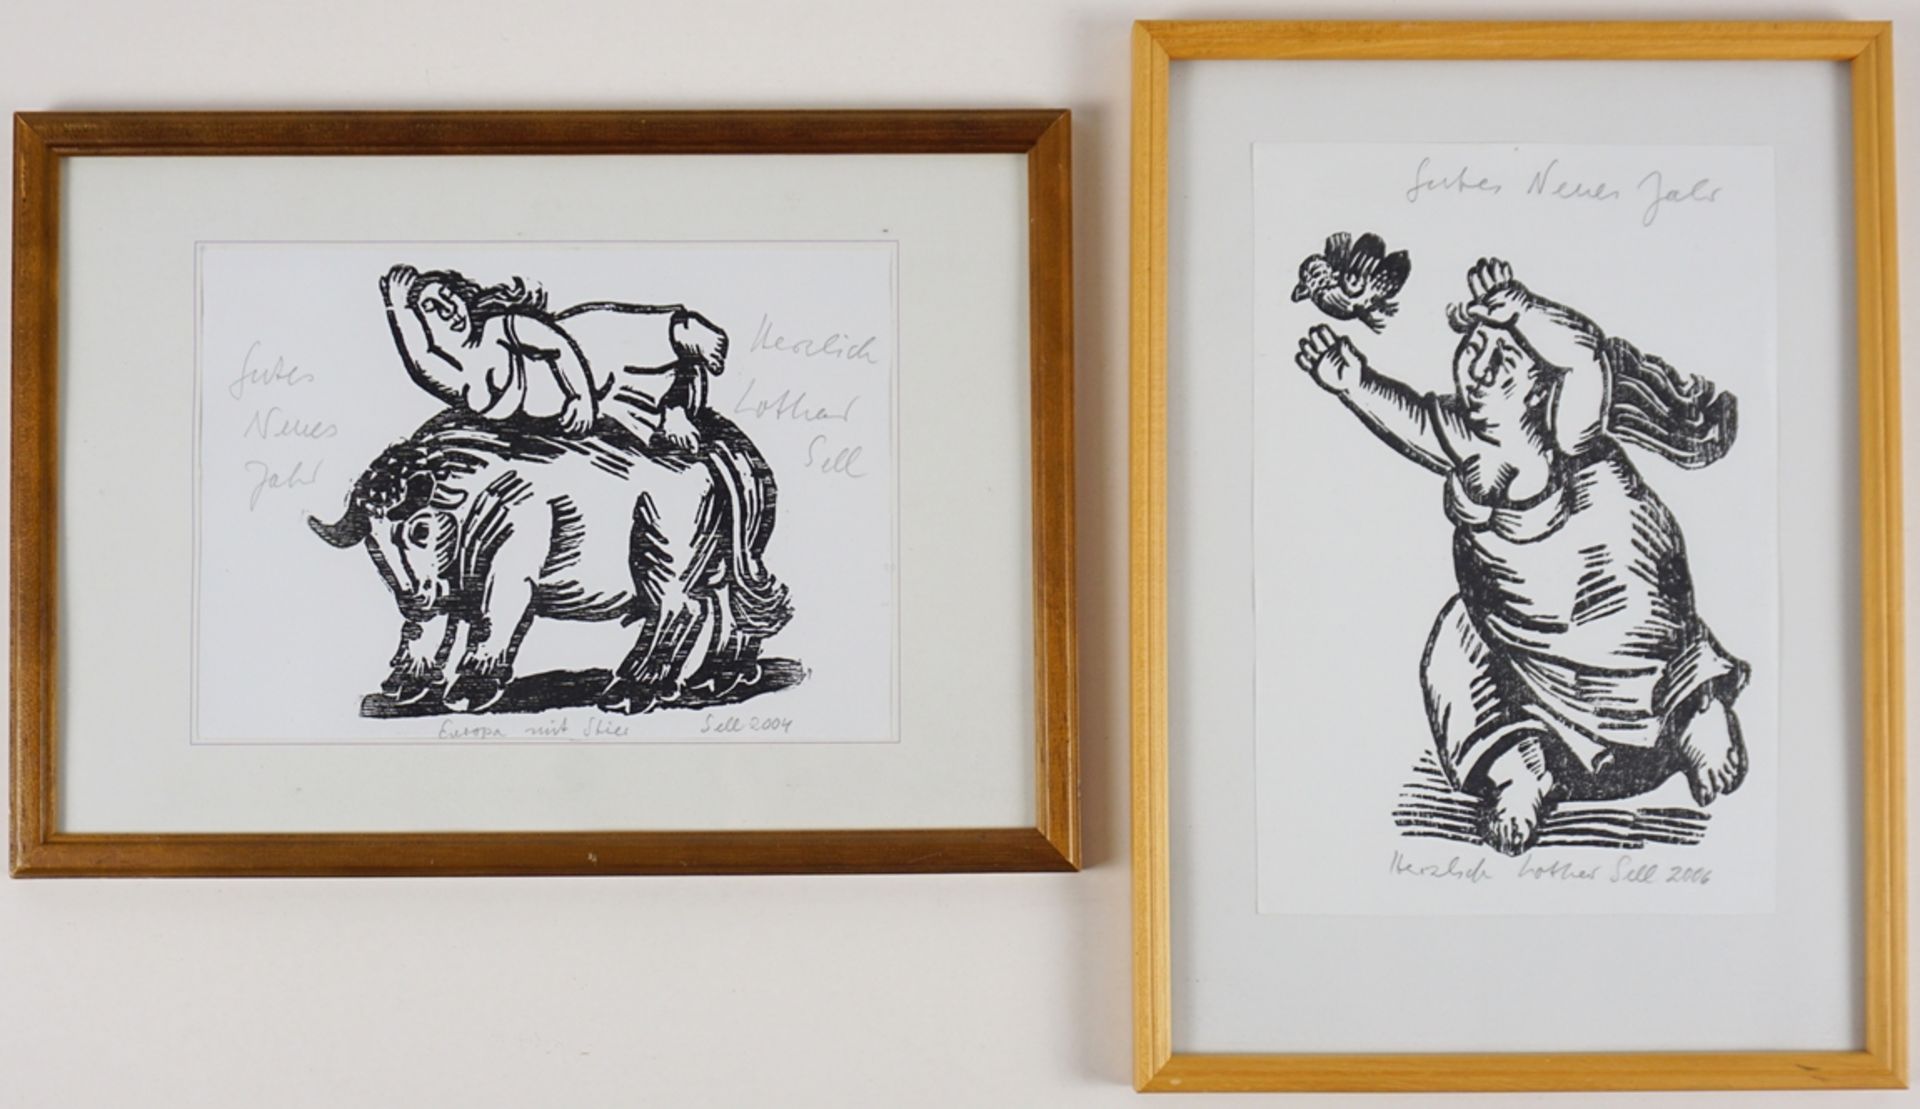 Lothar Sell (1939, Treuenbrietzen - 2009, Meißen), 2 Holzschnitte: "Europa mit Stier" und "Frau mit